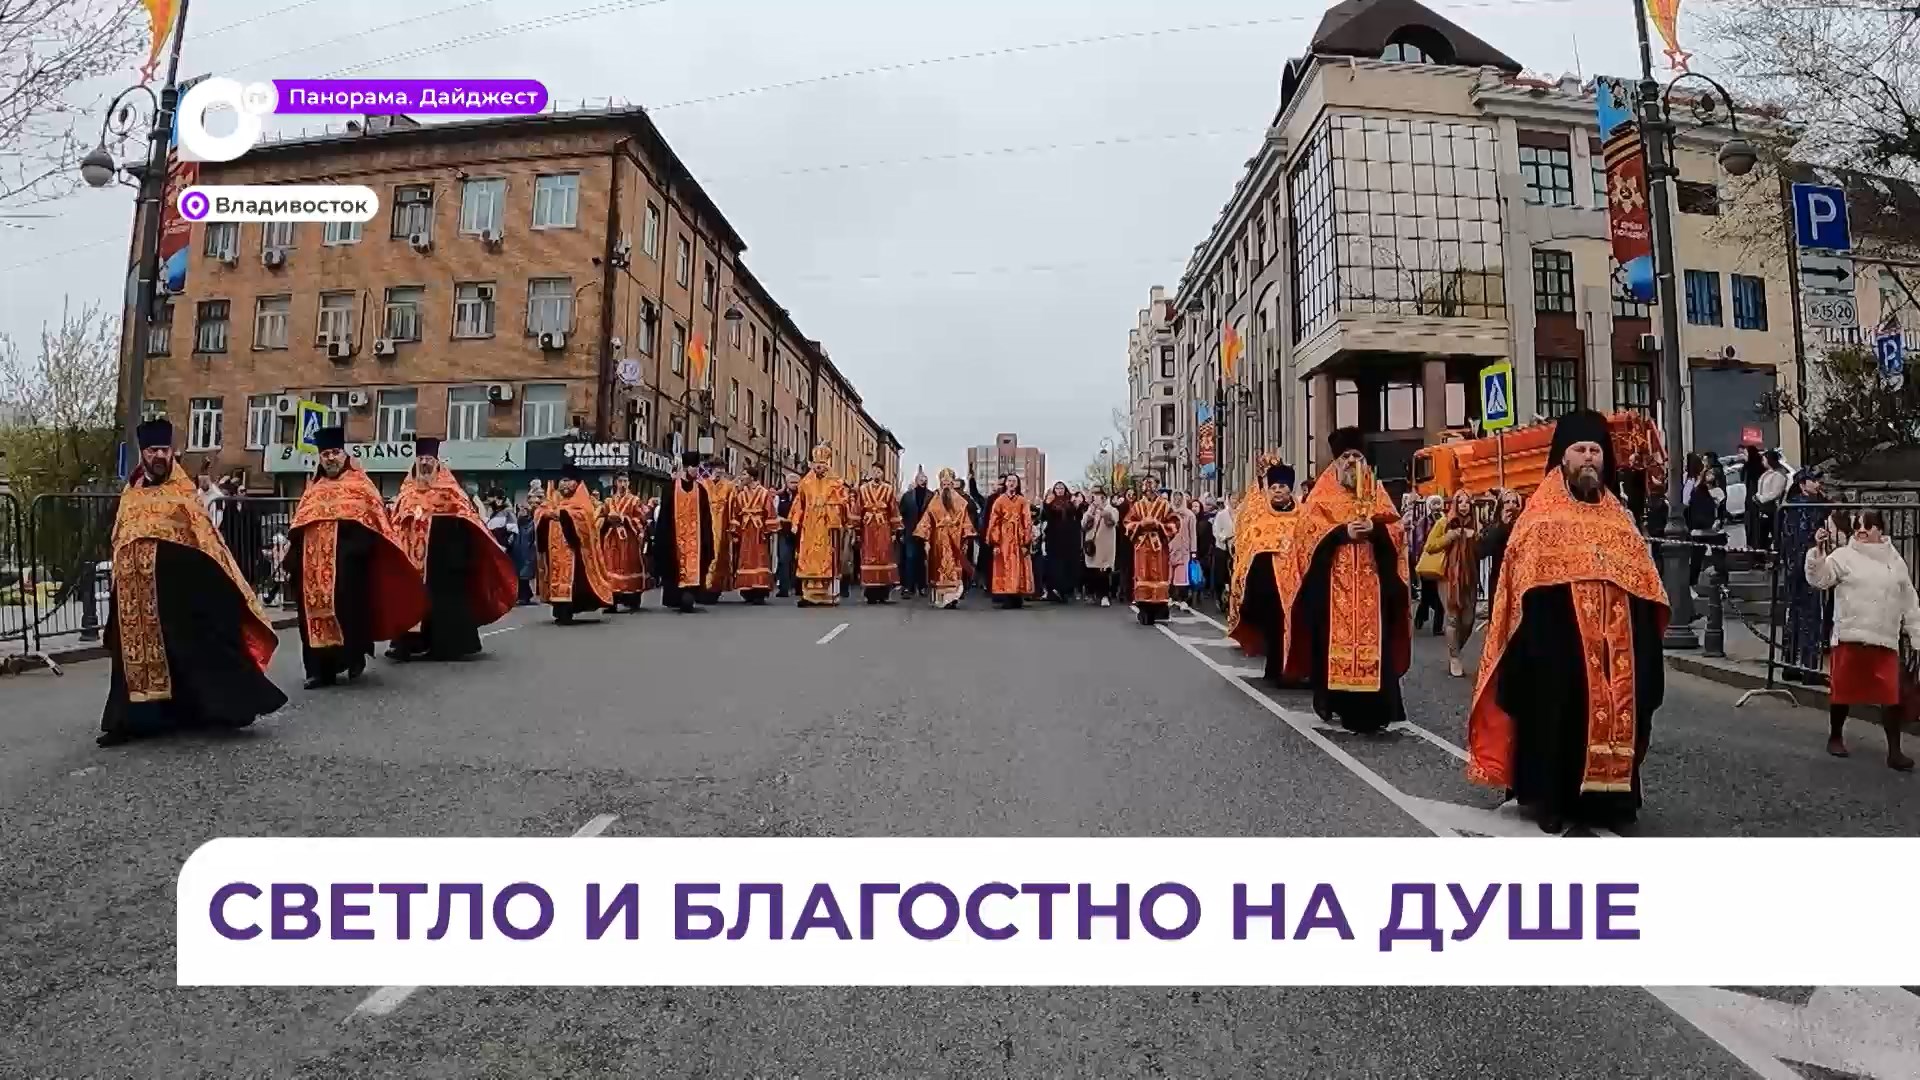 Во Владивостоке состоялся Крестный ход в честь Святой Пасхи